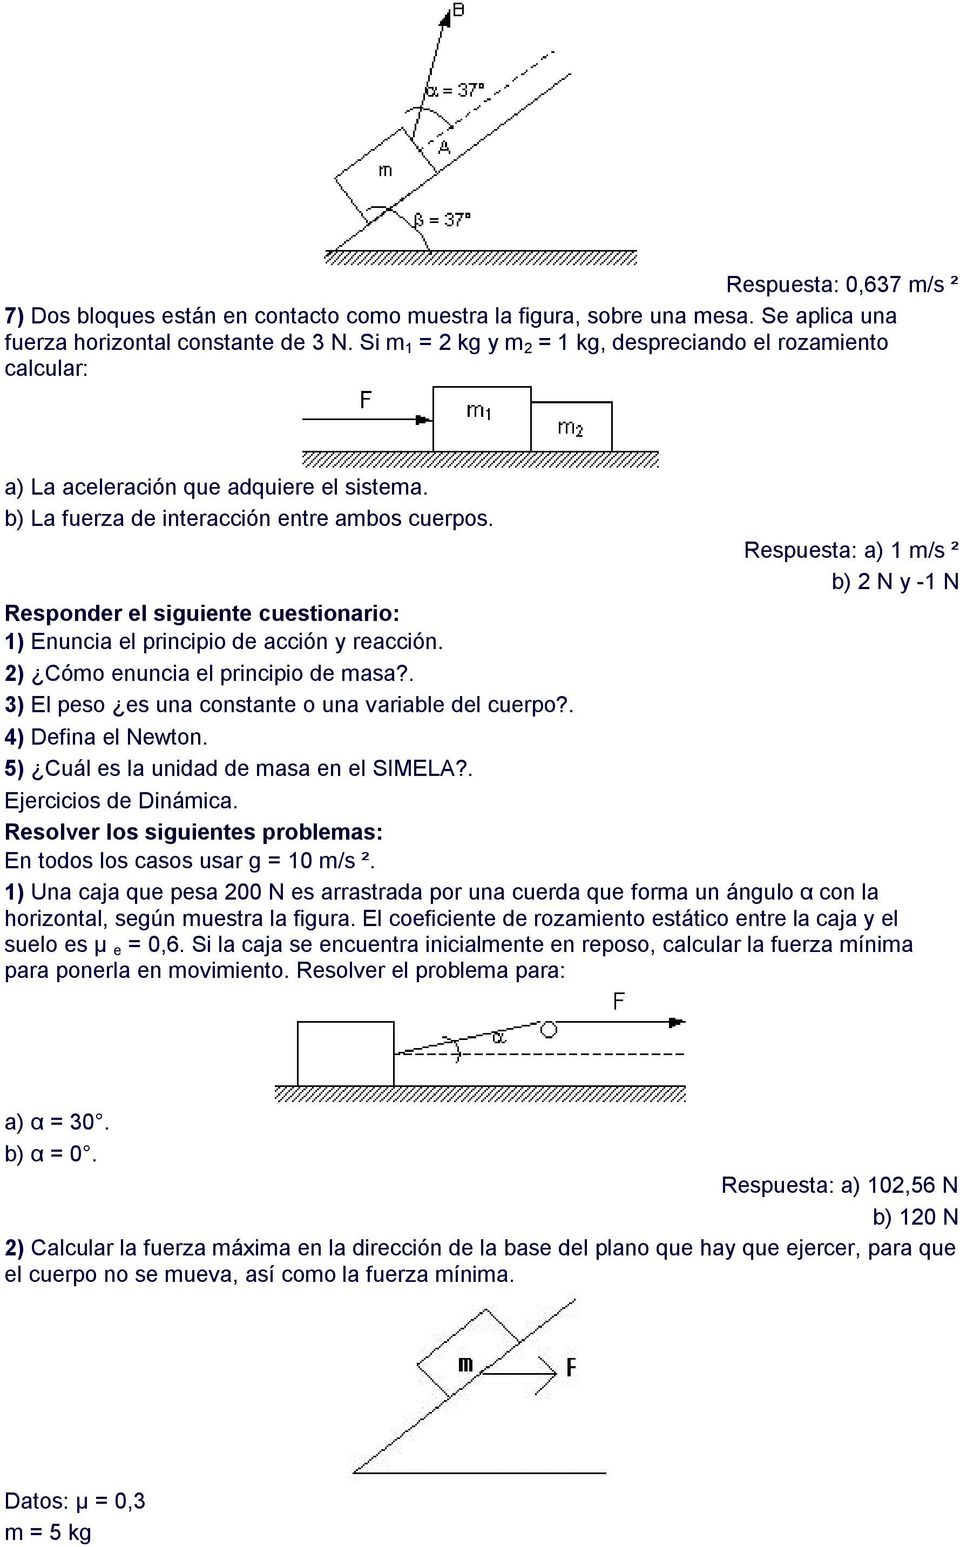 Respuesta: a) 1 m/s ² b) 2 N y -1 N Responder el siguiente cuestionario: 1) Enuncia el principio de acción y reacción. 2) Cómo enuncia el principio de masa?